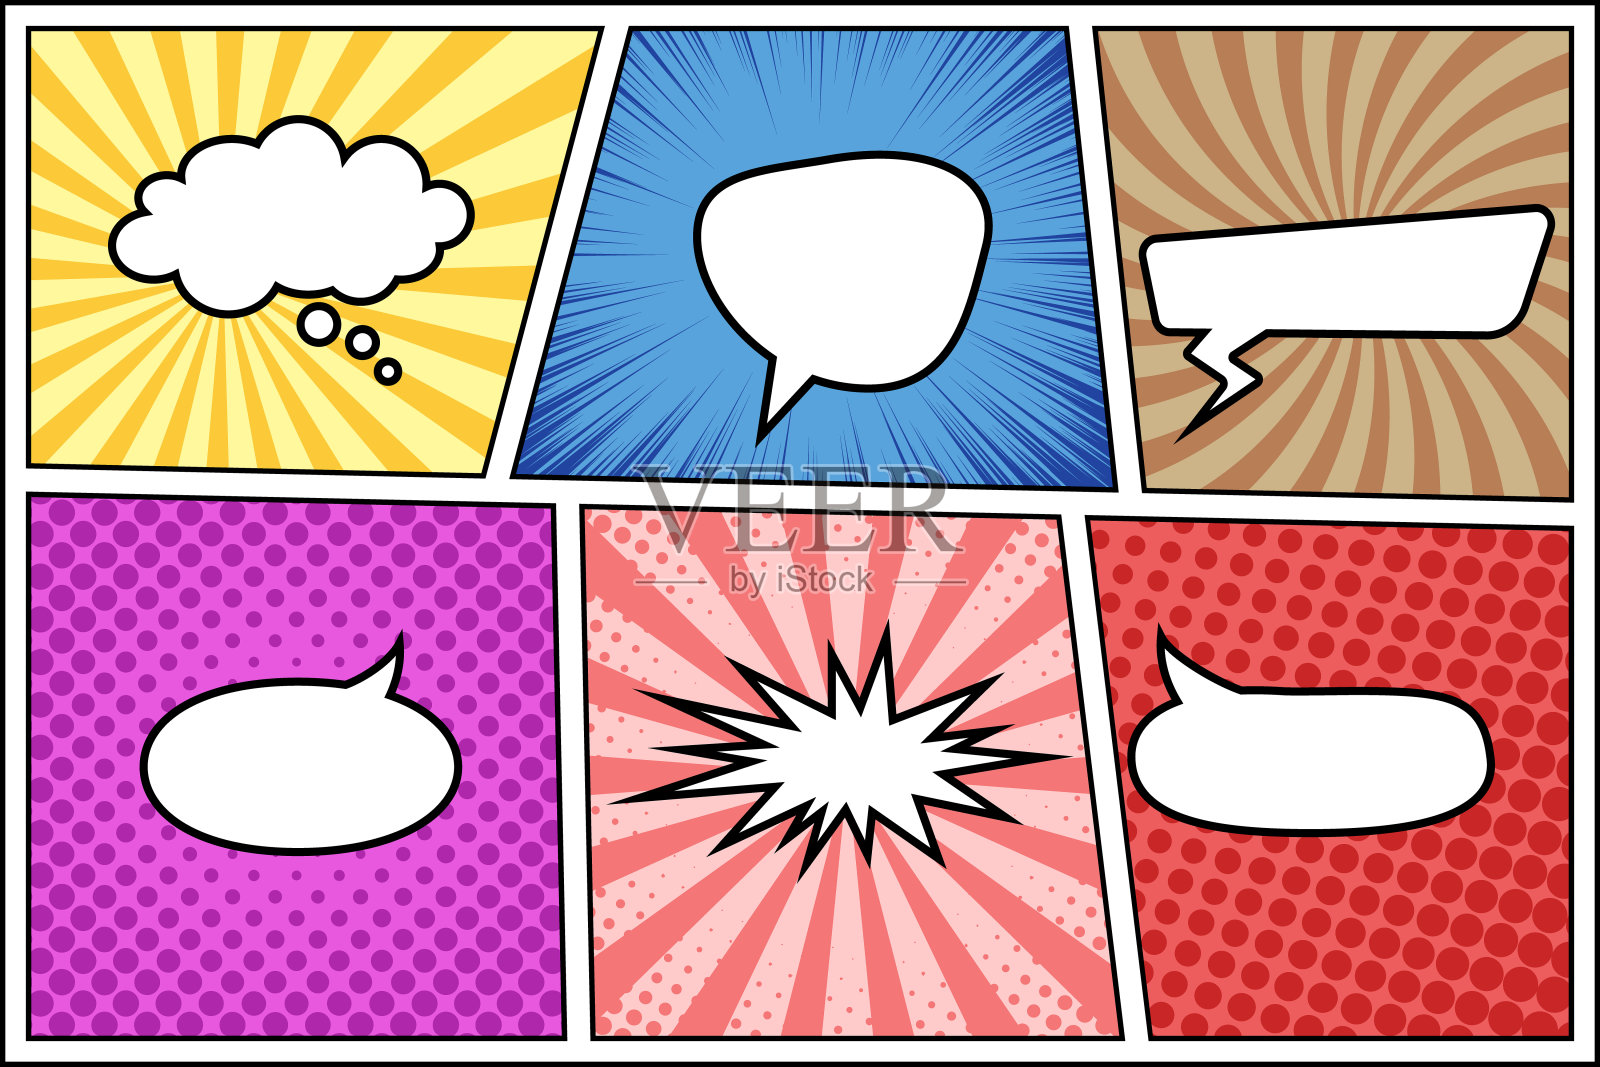 漫画页模板与不同的背景和讲话气泡。波普艺术风格插画图片素材